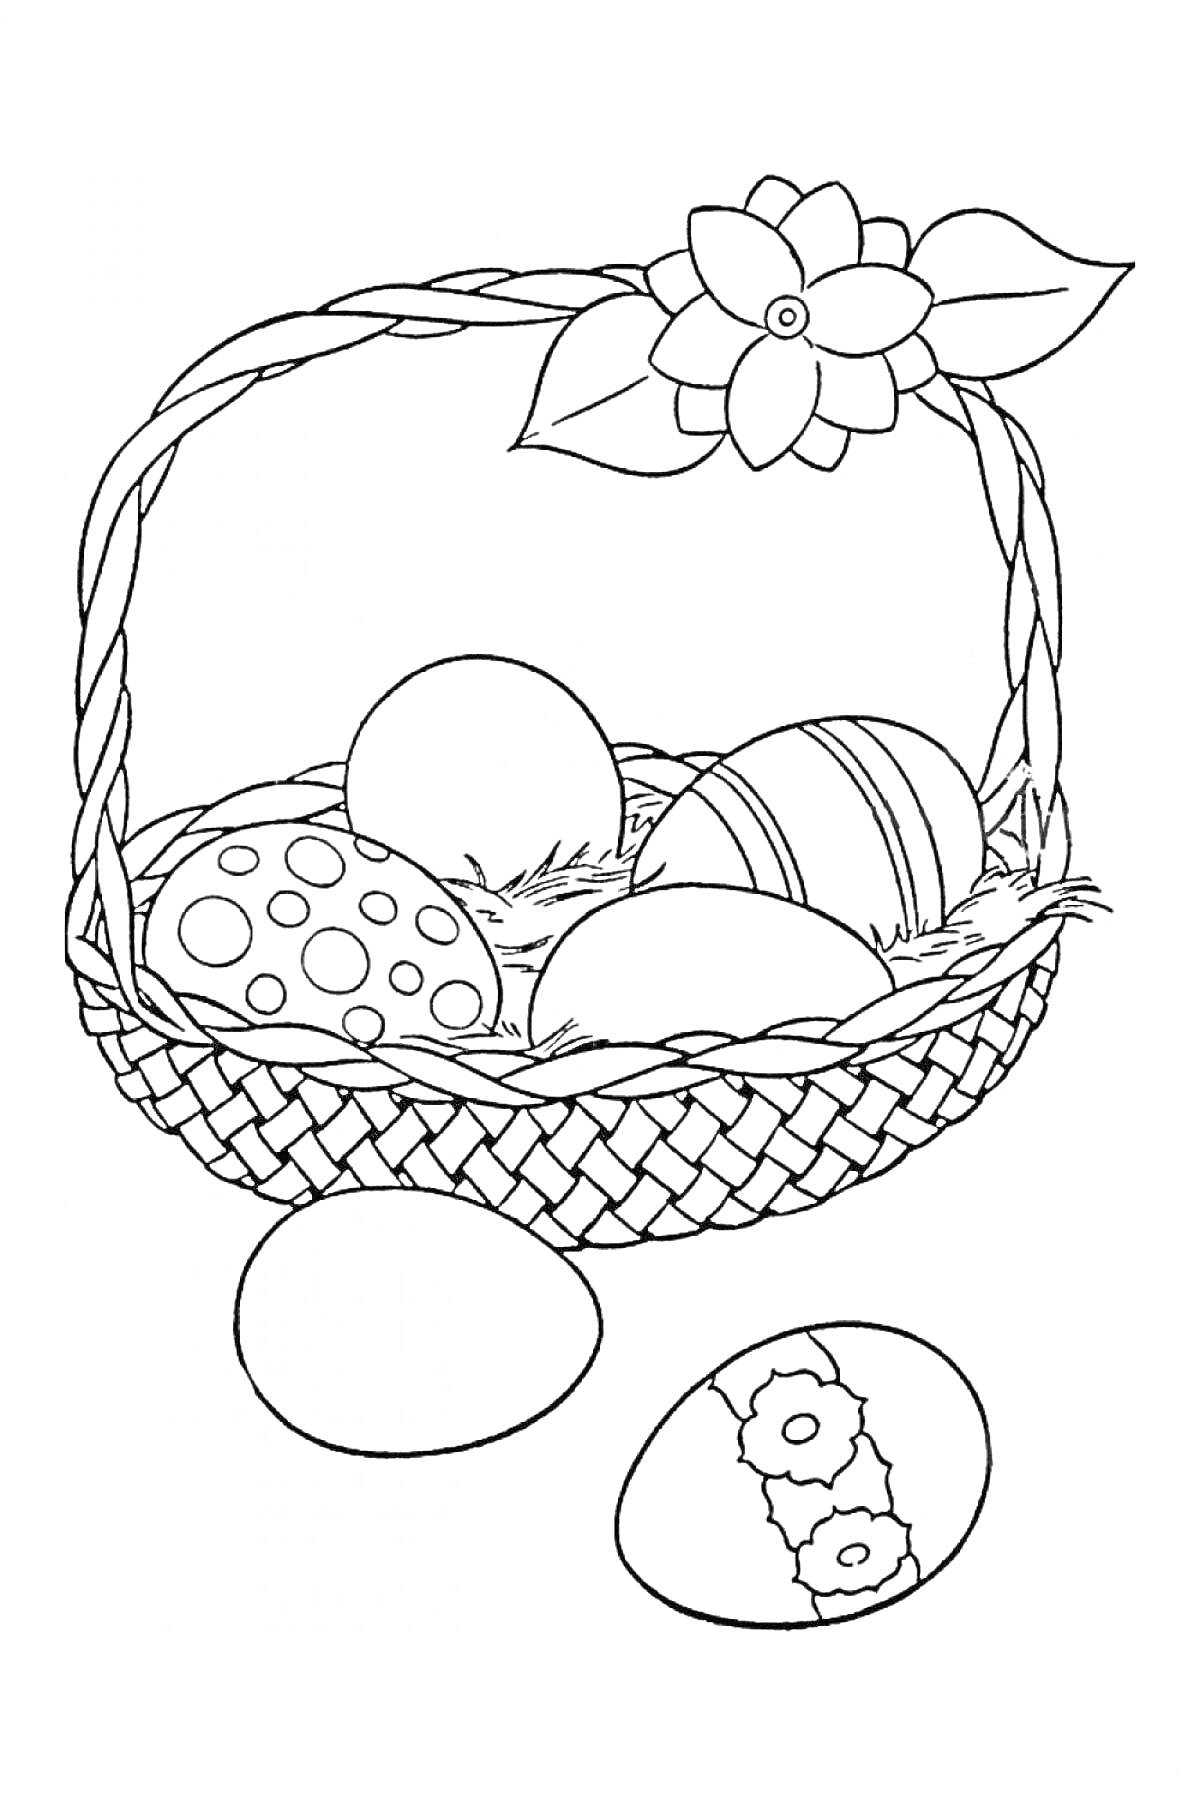 Раскраска Пасхальная корзина с цветком, в которой находятся три декорированных яйца и два яйца вне корзины на переднем плане